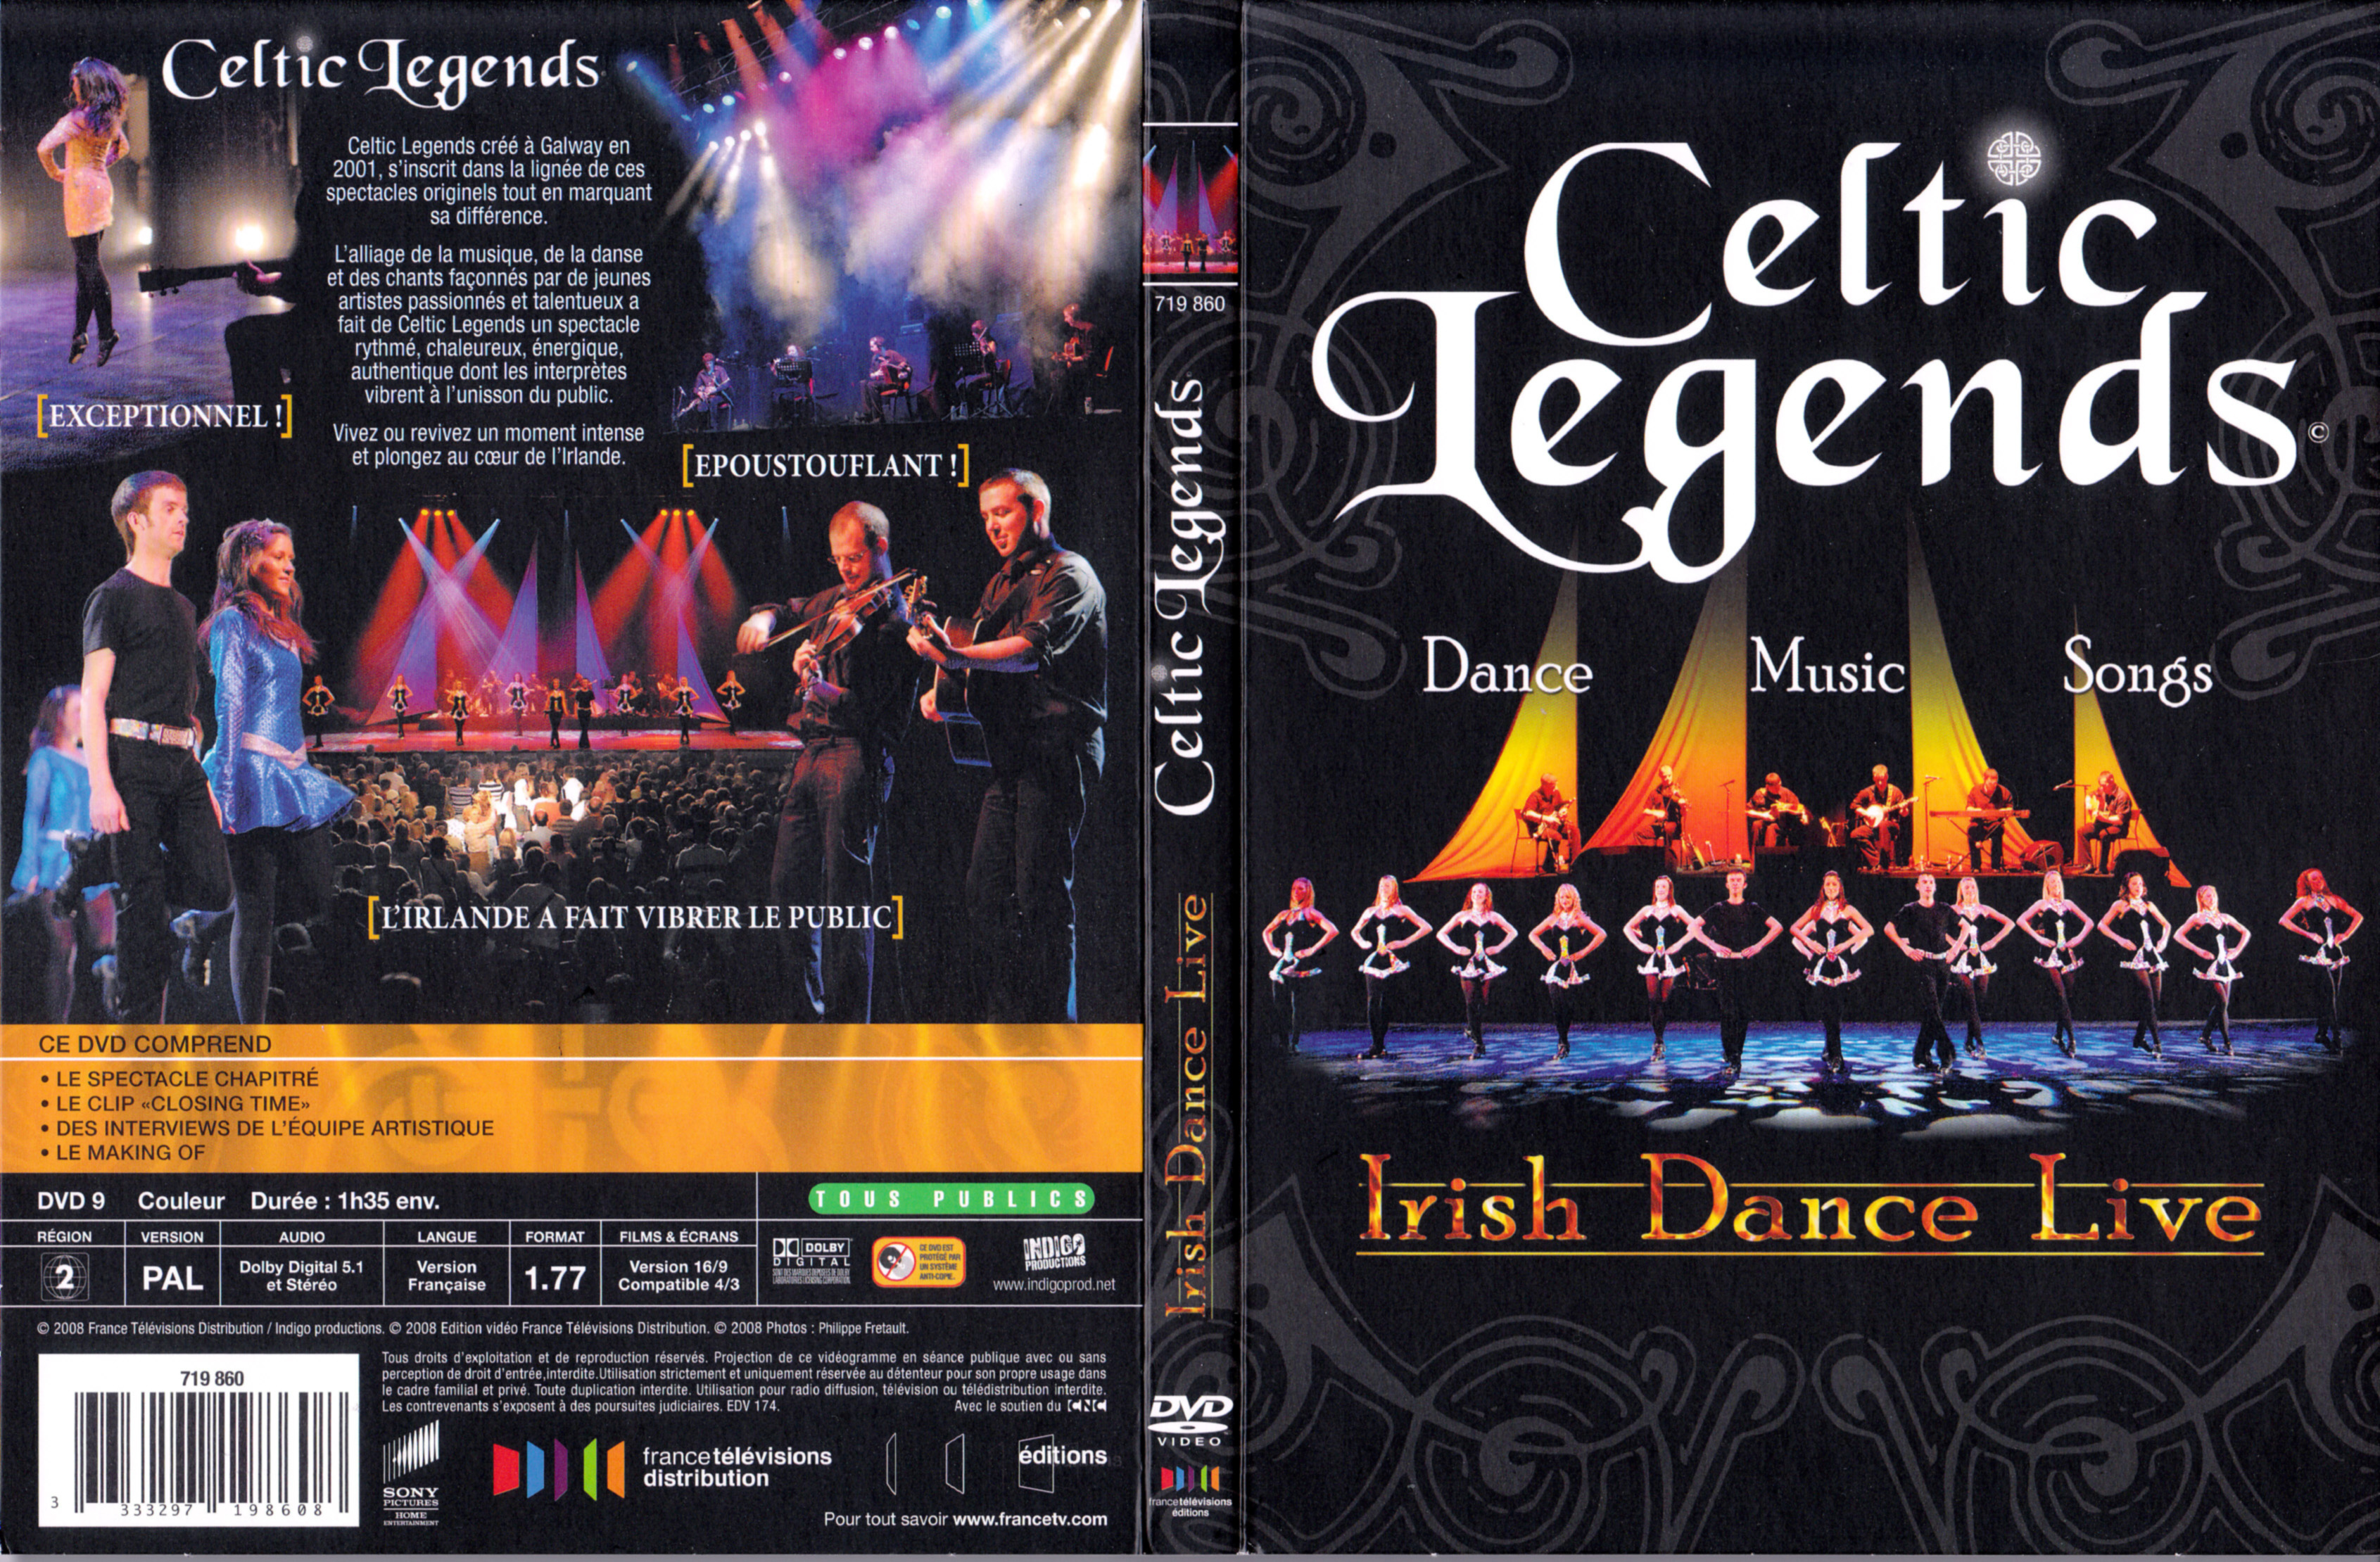 Jaquette DVD Celtic Legends